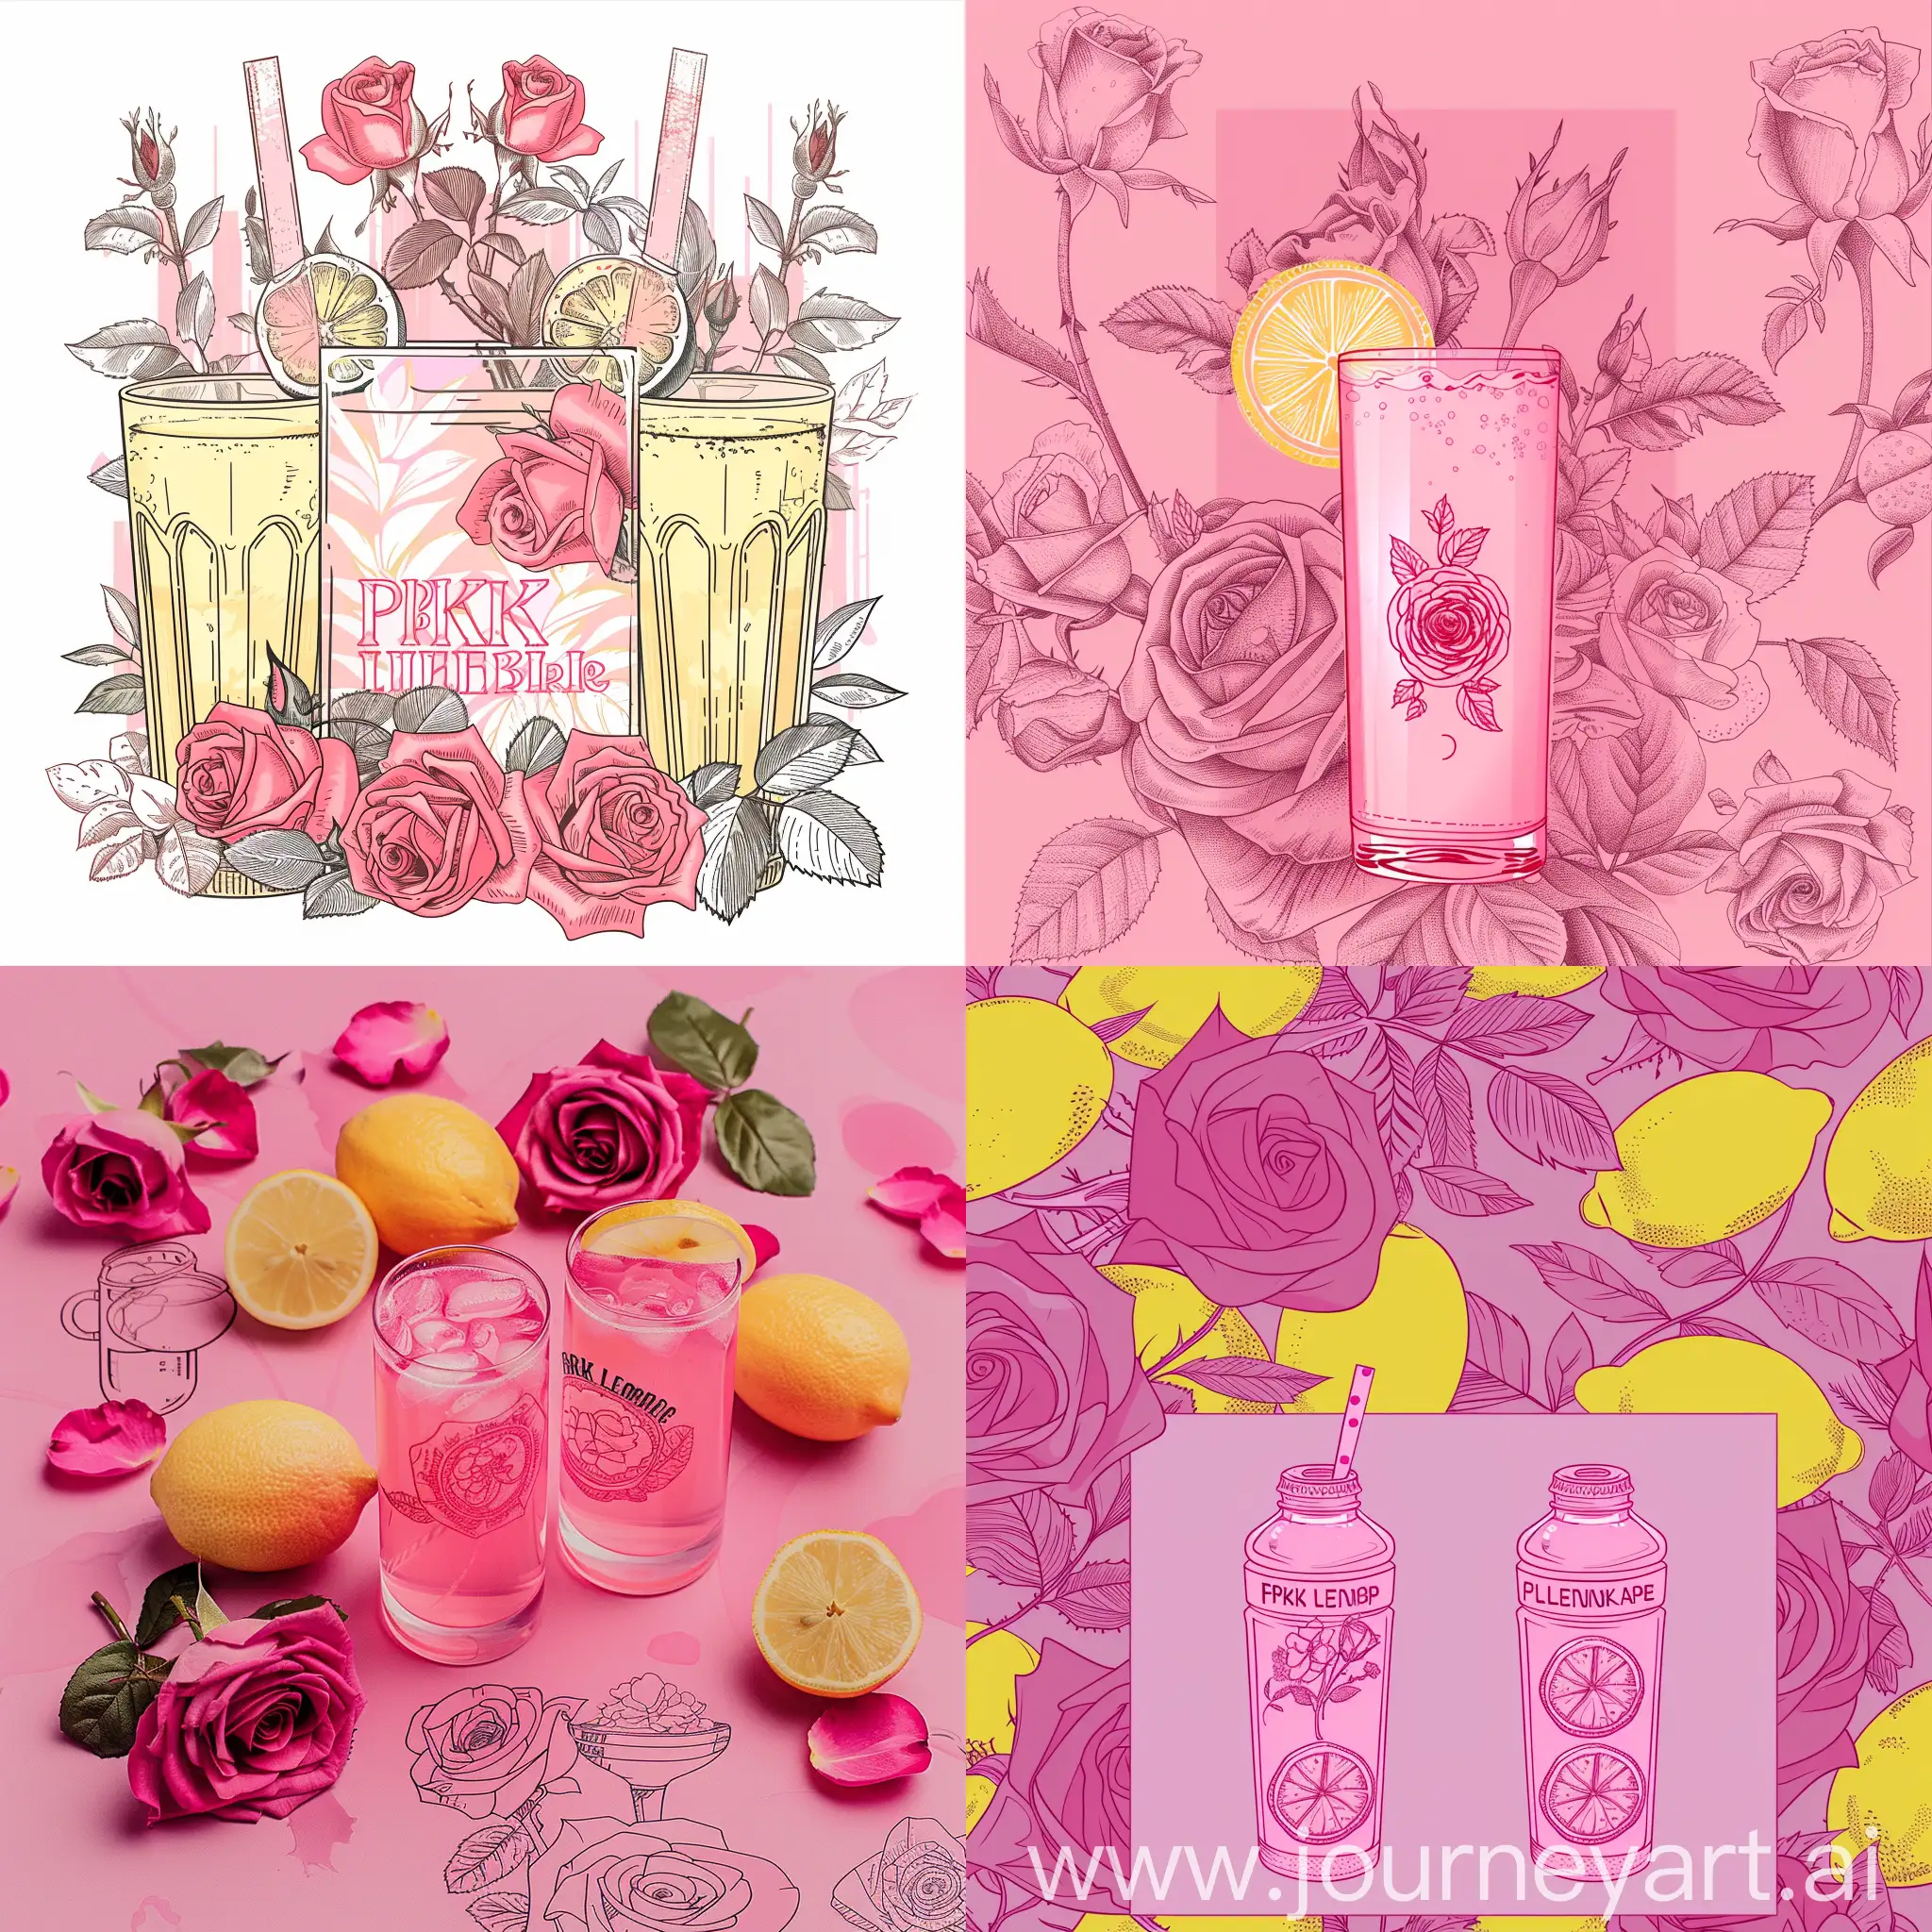 Создать логотип для лимонада, который производится на базе Крымского Федерального Университета, и называется "розовый лимонад", цветовая гамма должна быть розовая, на этикетке могут присутствовать рисунки роз и стаканчиков с лимонадом